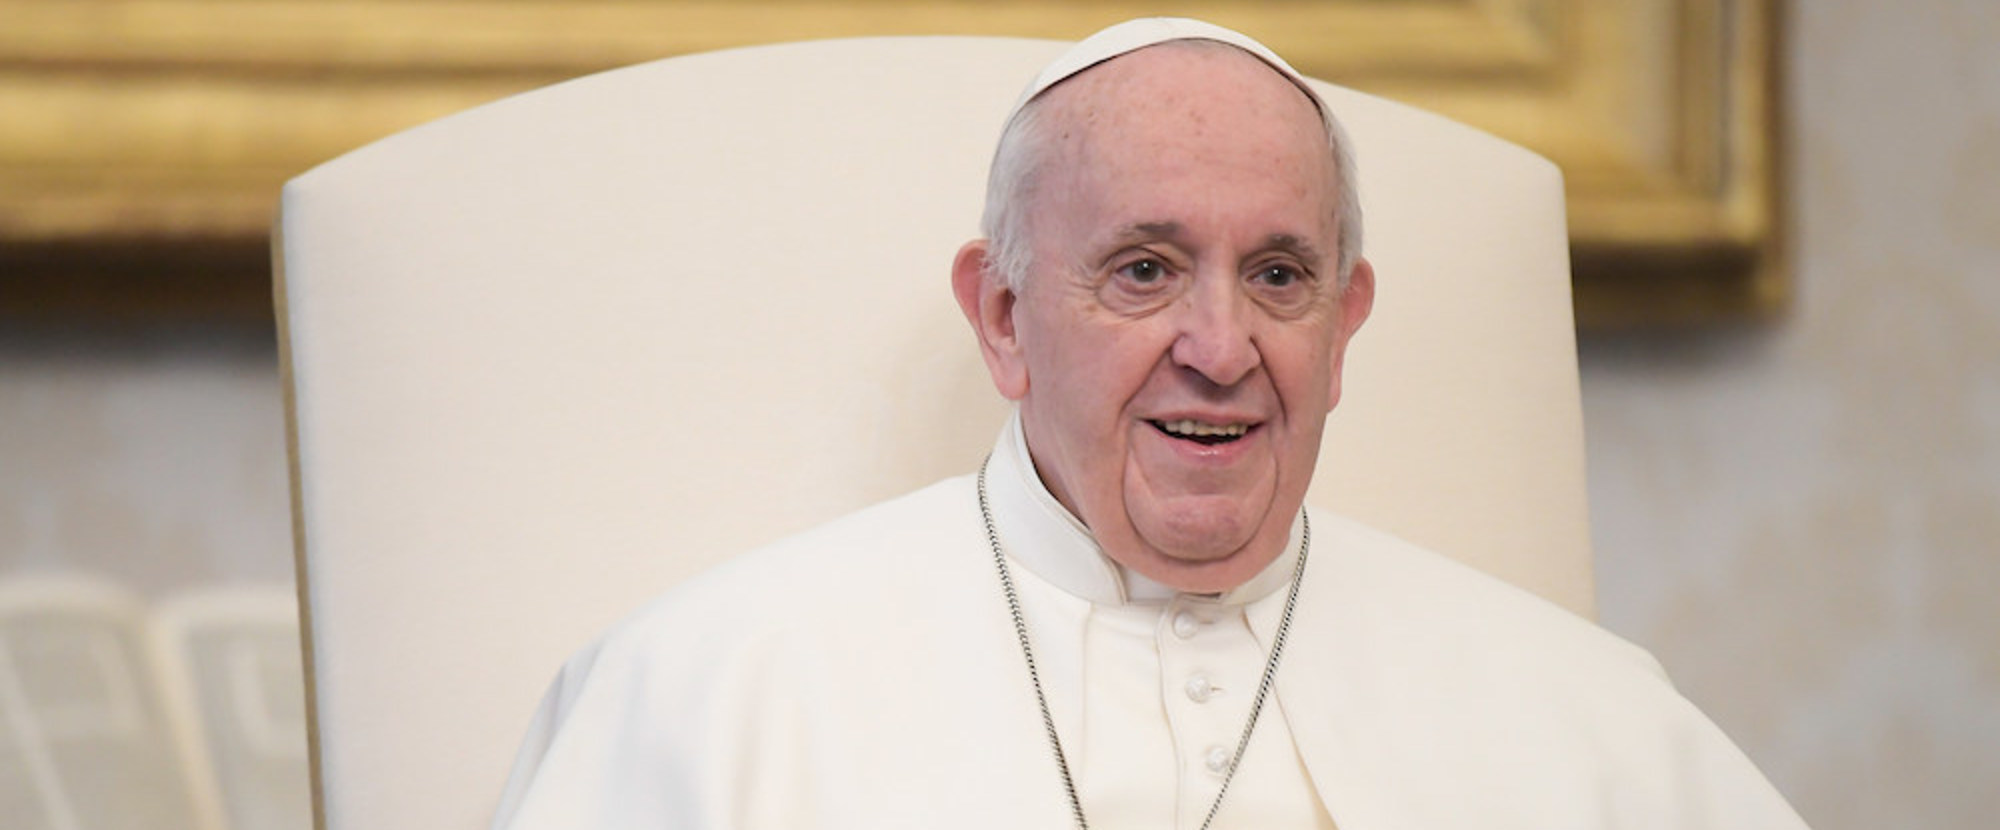 Papst Franziskus während der wöchentlichen Videobotschaft aus der Bibliothek des Apostolischen Palastes im Vatikan am 3. Februar 2021.